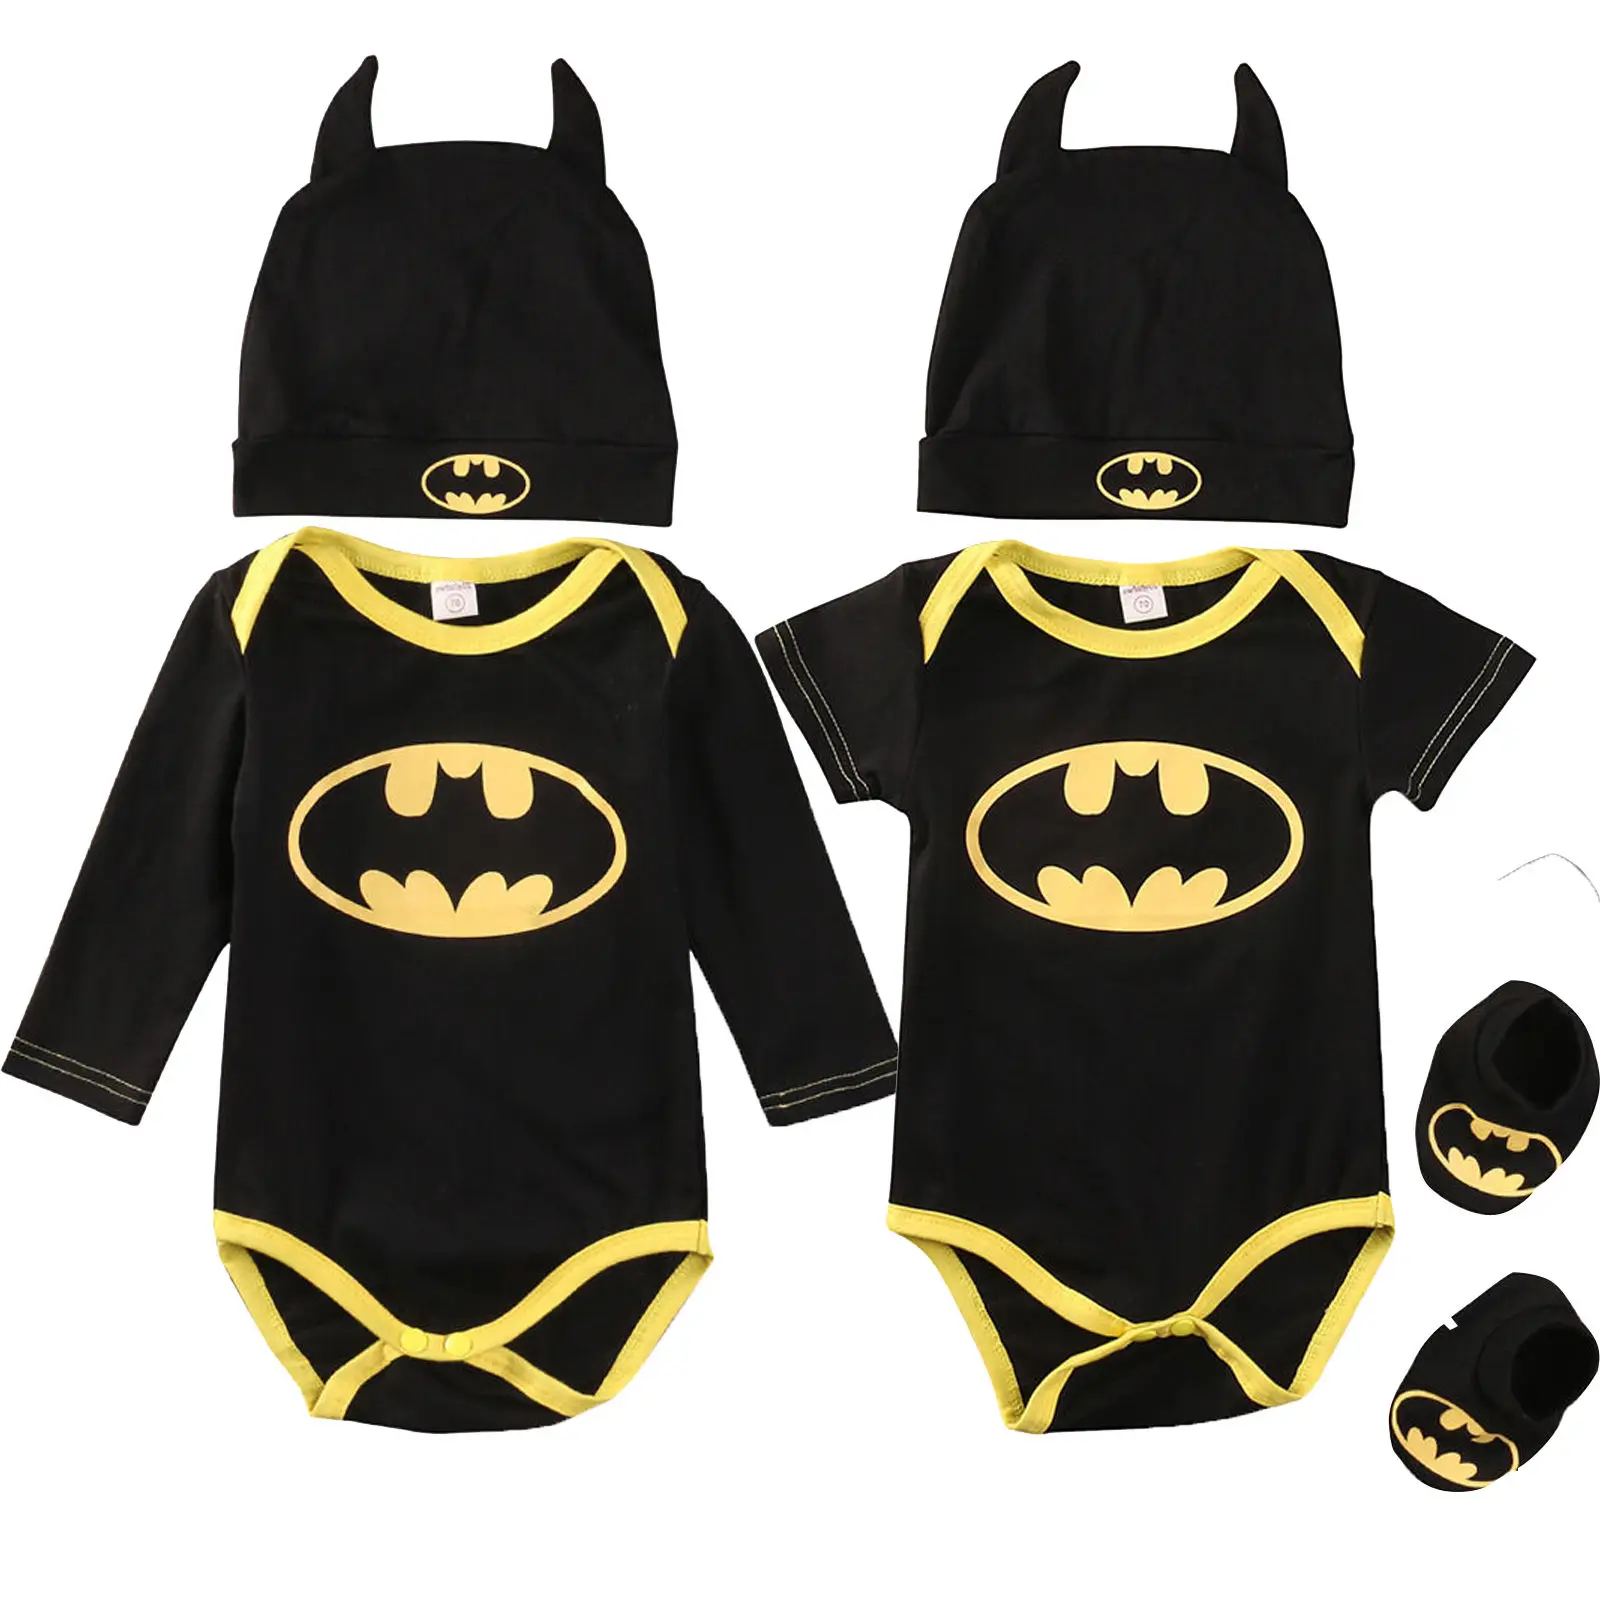 Batman barboteuses body chaussures chapeau Costumes 3 pièces combinaisons Halloween nouveau-né bébé garçon fille vêtements été automne tenues ensembles